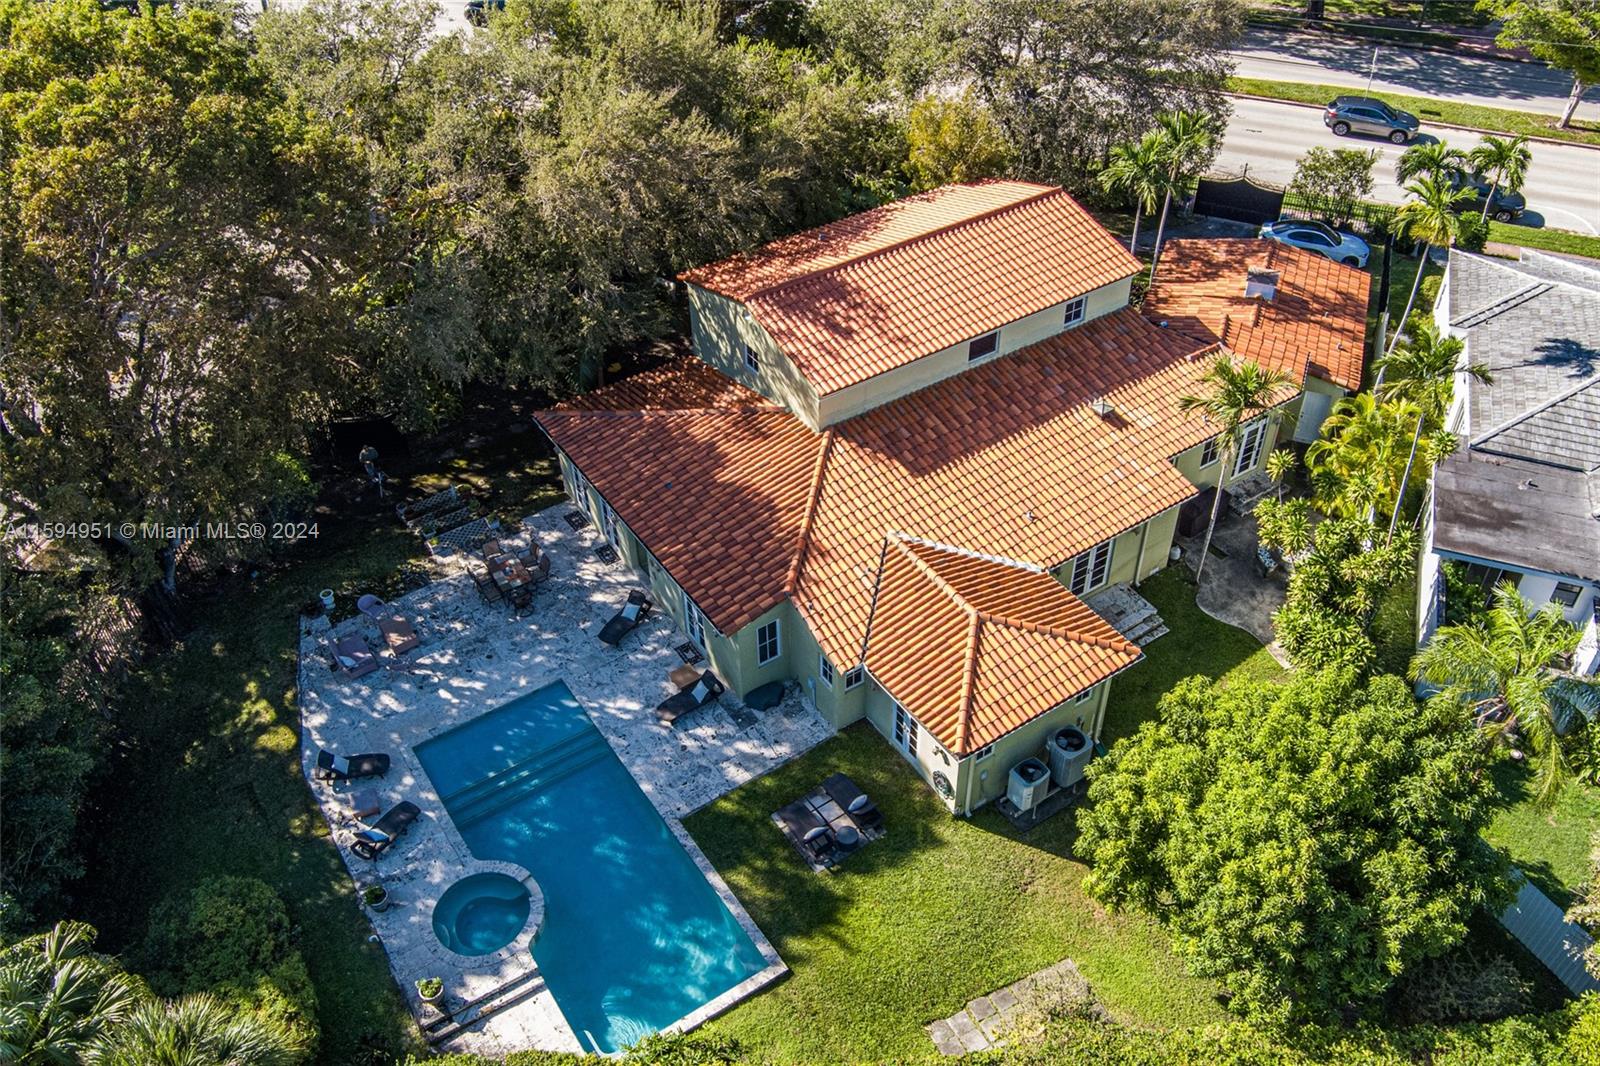 Property for Sale at 5101 Alton Rd Rd, Miami Beach, Miami-Dade County, Florida - Bedrooms: 5 
Bathrooms: 5  - $3,800,000